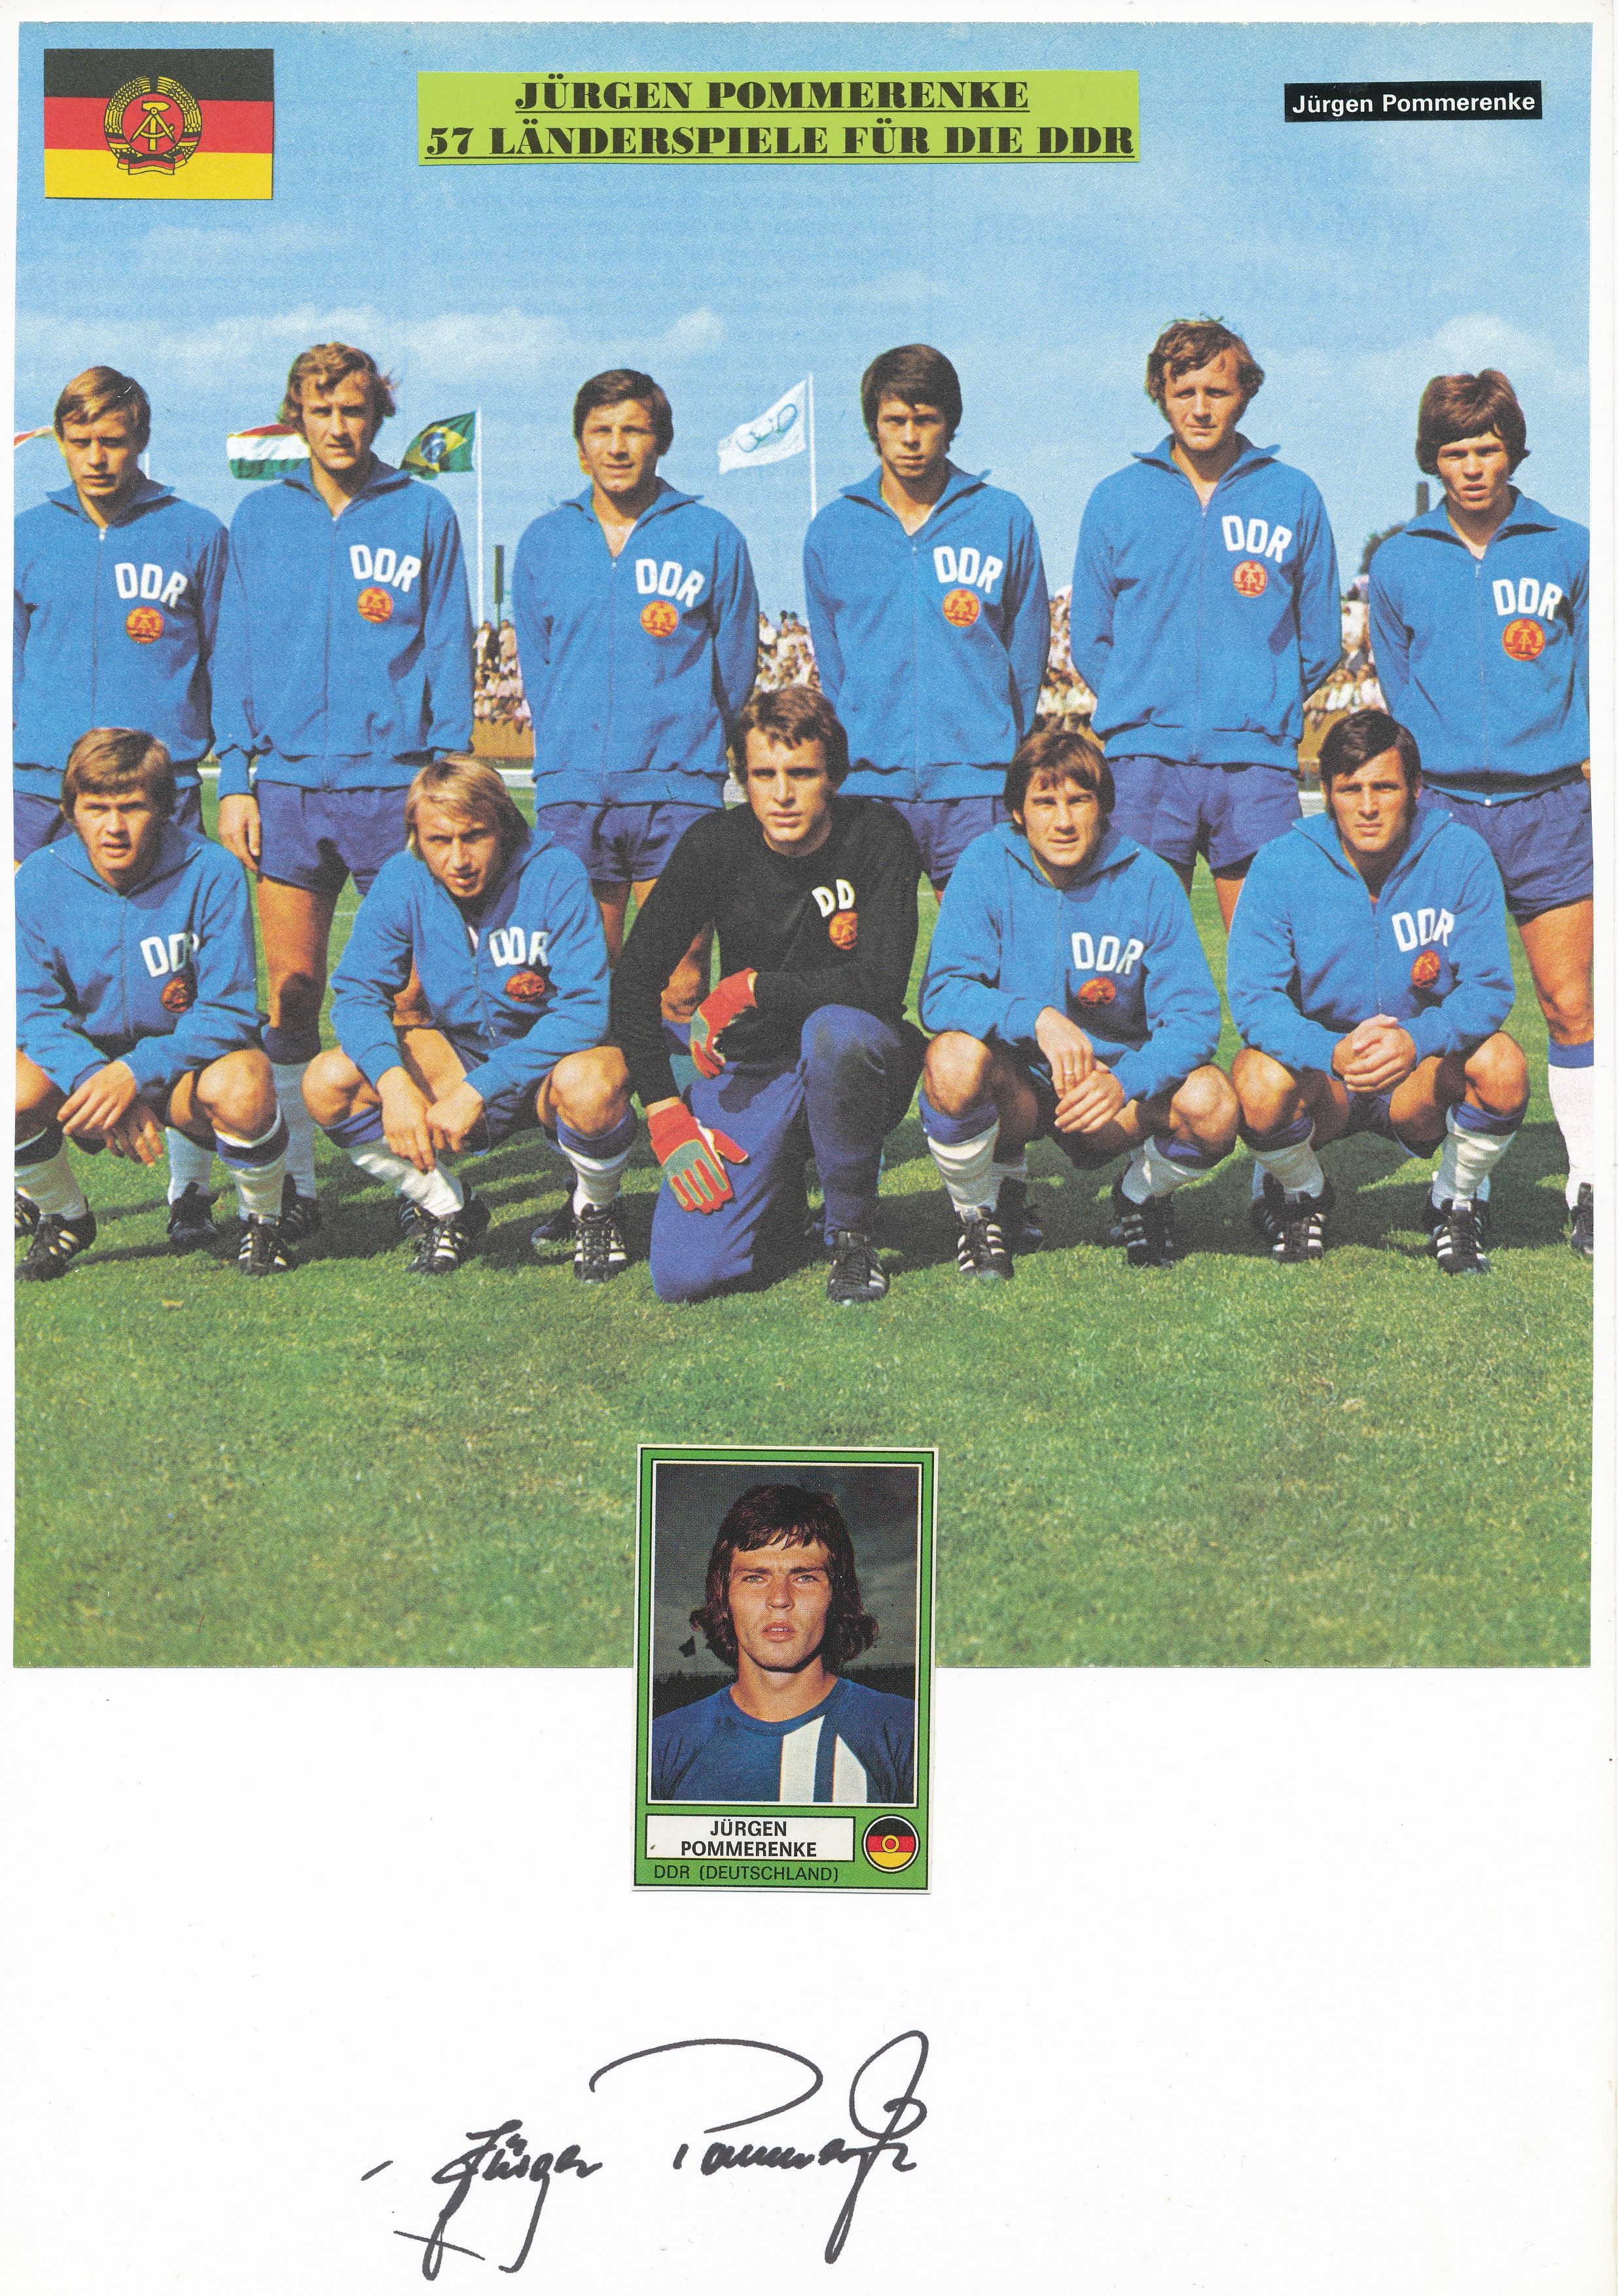 Jürgen Pommerenke Autogrammkarte DDR WM 1974 Original Signiert